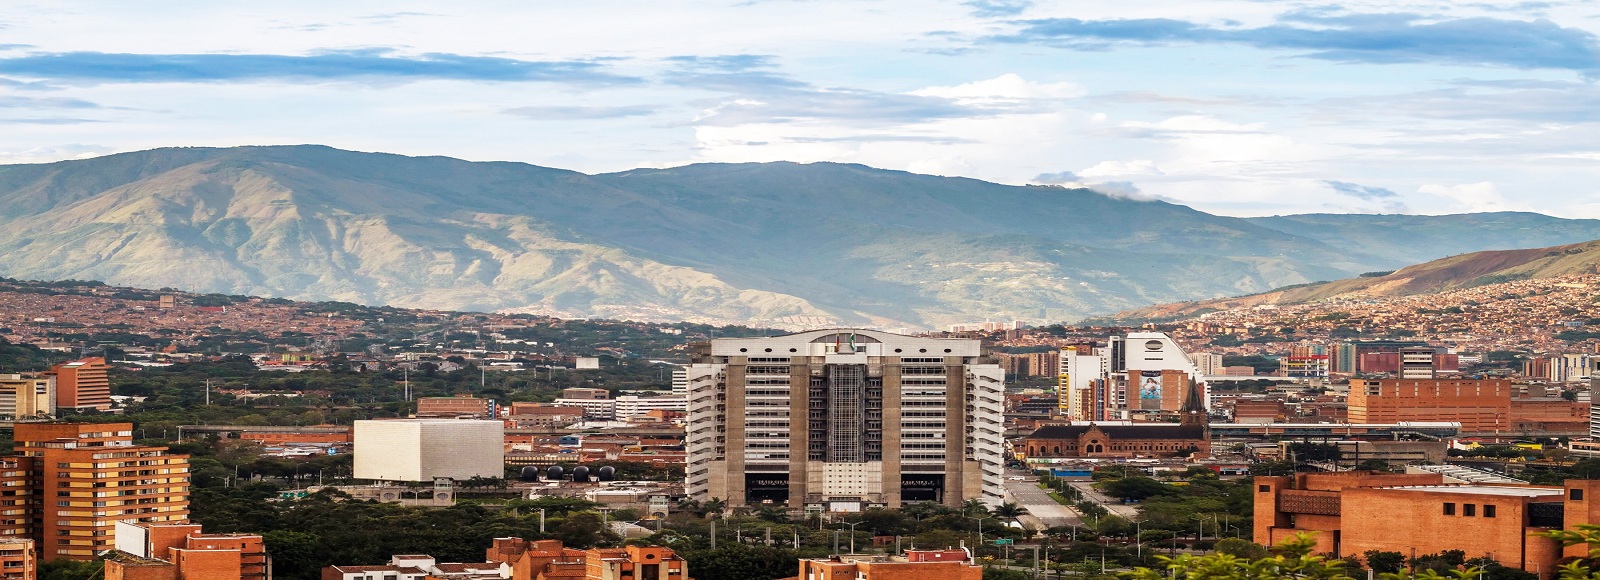 Ofertas de Traslados en Medellín. Traslados económicos en Medellín 